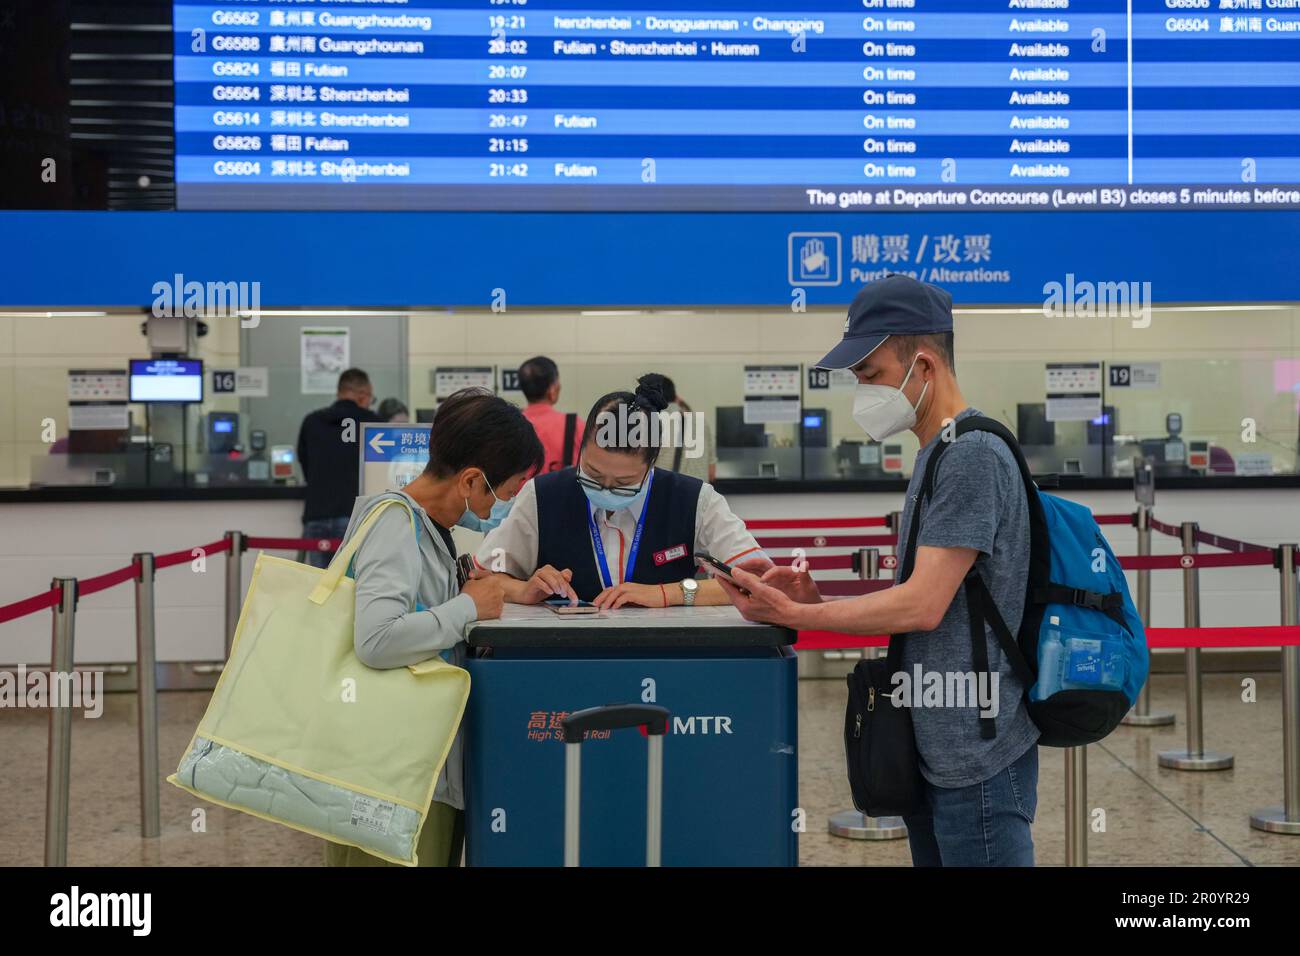 Les passagers demandent des informations sur l'utilisation de leur permis de retour à domicile expiré pour acheter des billets de train à grande vitesse à la gare de Hong Kong West Kowloon. 08MAY23 SCMP / Sam Tsang Banque D'Images